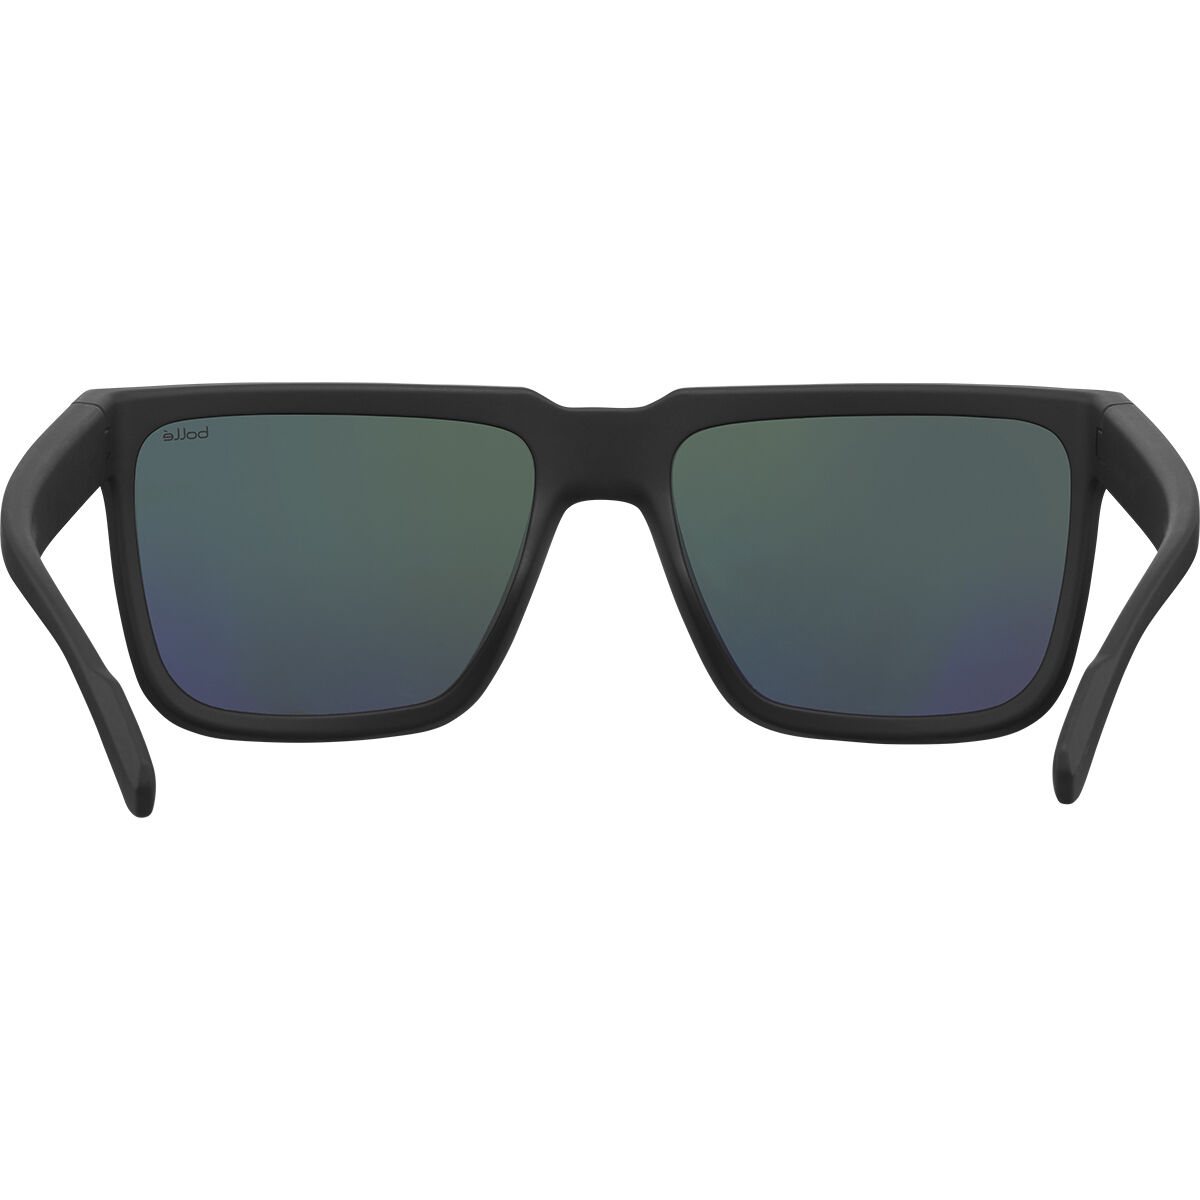 Bollé FRANK Marine Sport Sunglasses - HD Polarized Lenses